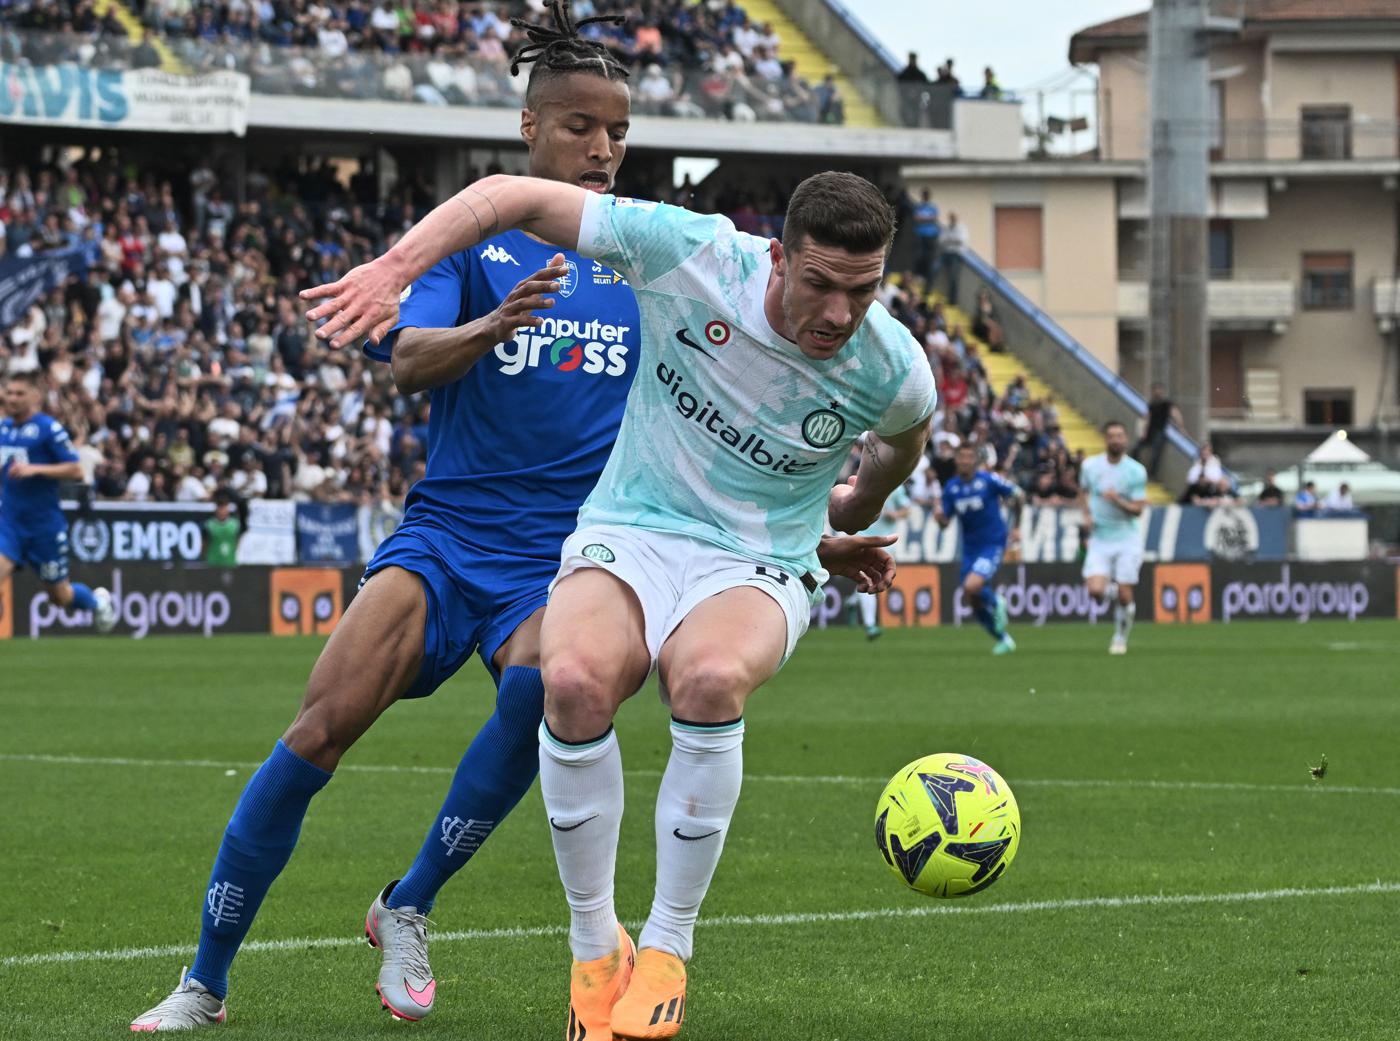 Empoli v Inter - 0-3. Mistrzostwa Włoch, 31. kolejka. Przegląd meczu, statystyki.